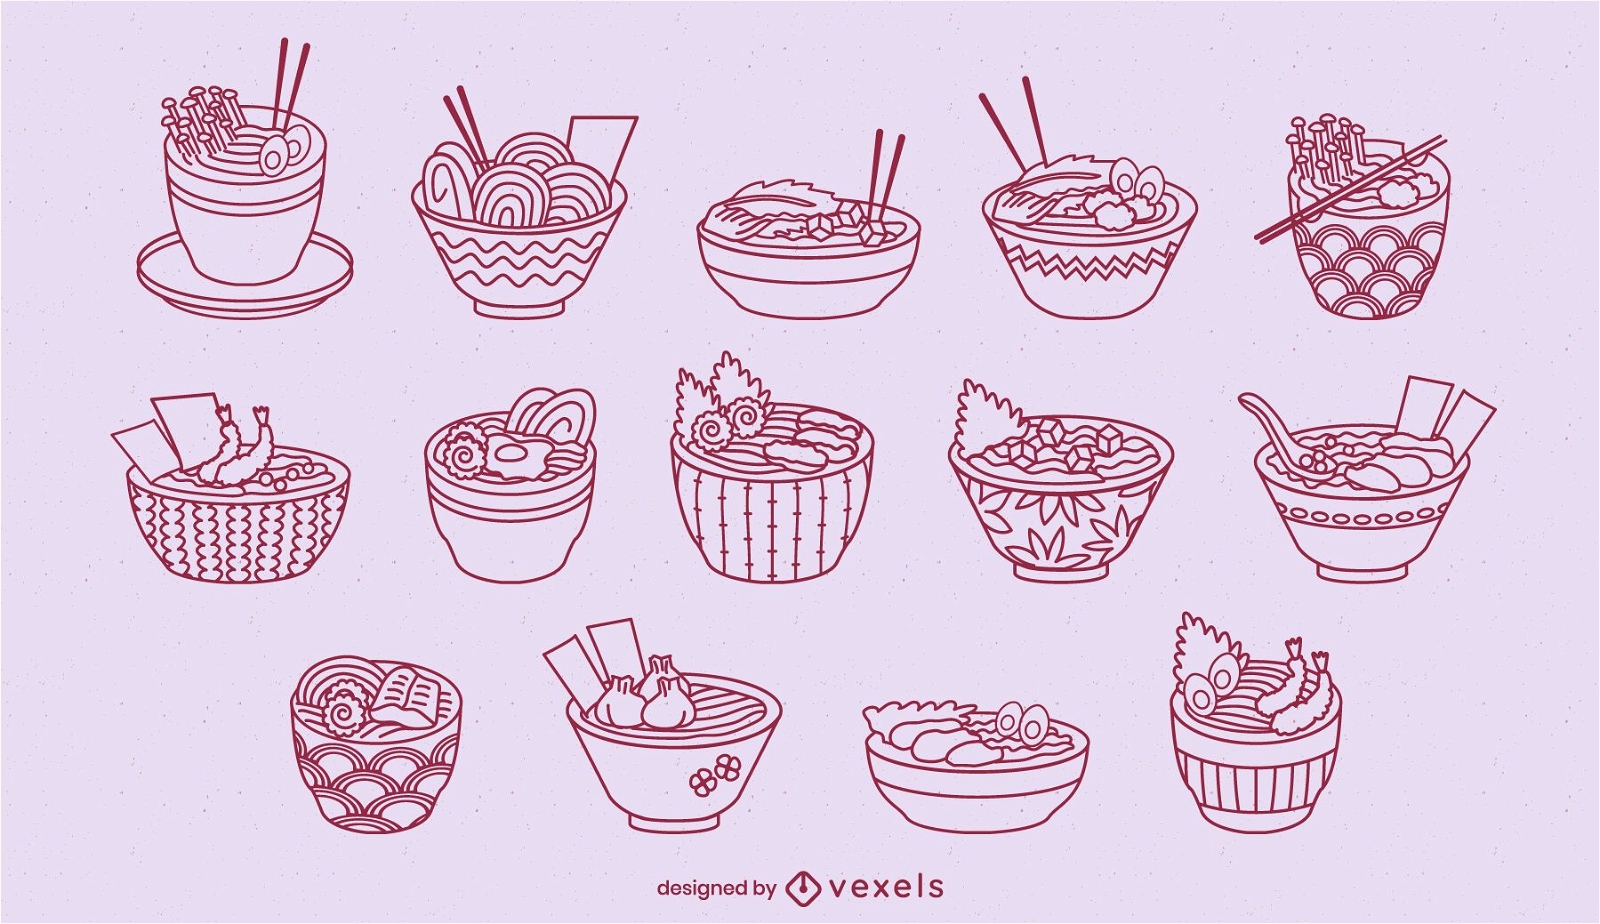 Lindo ramen bowls set de arte de l?nea de comida japonesa